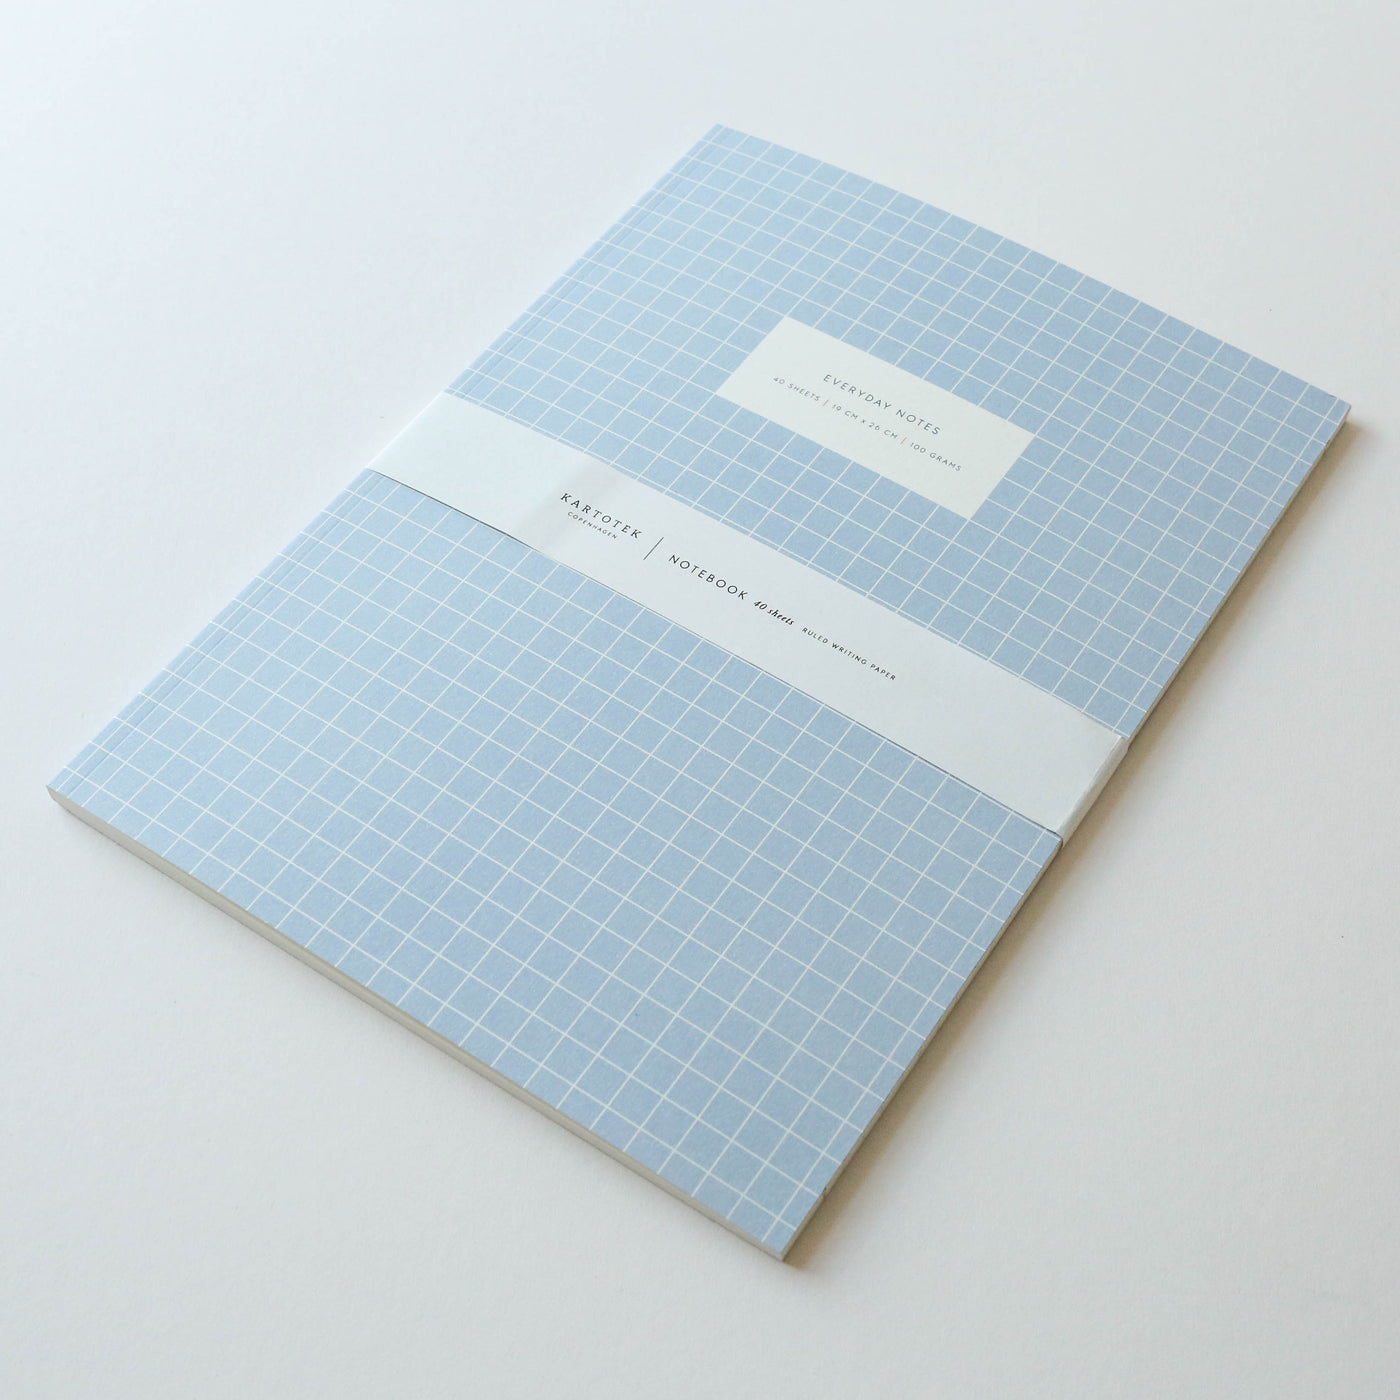 Kartotek Soft Cover Notebooks